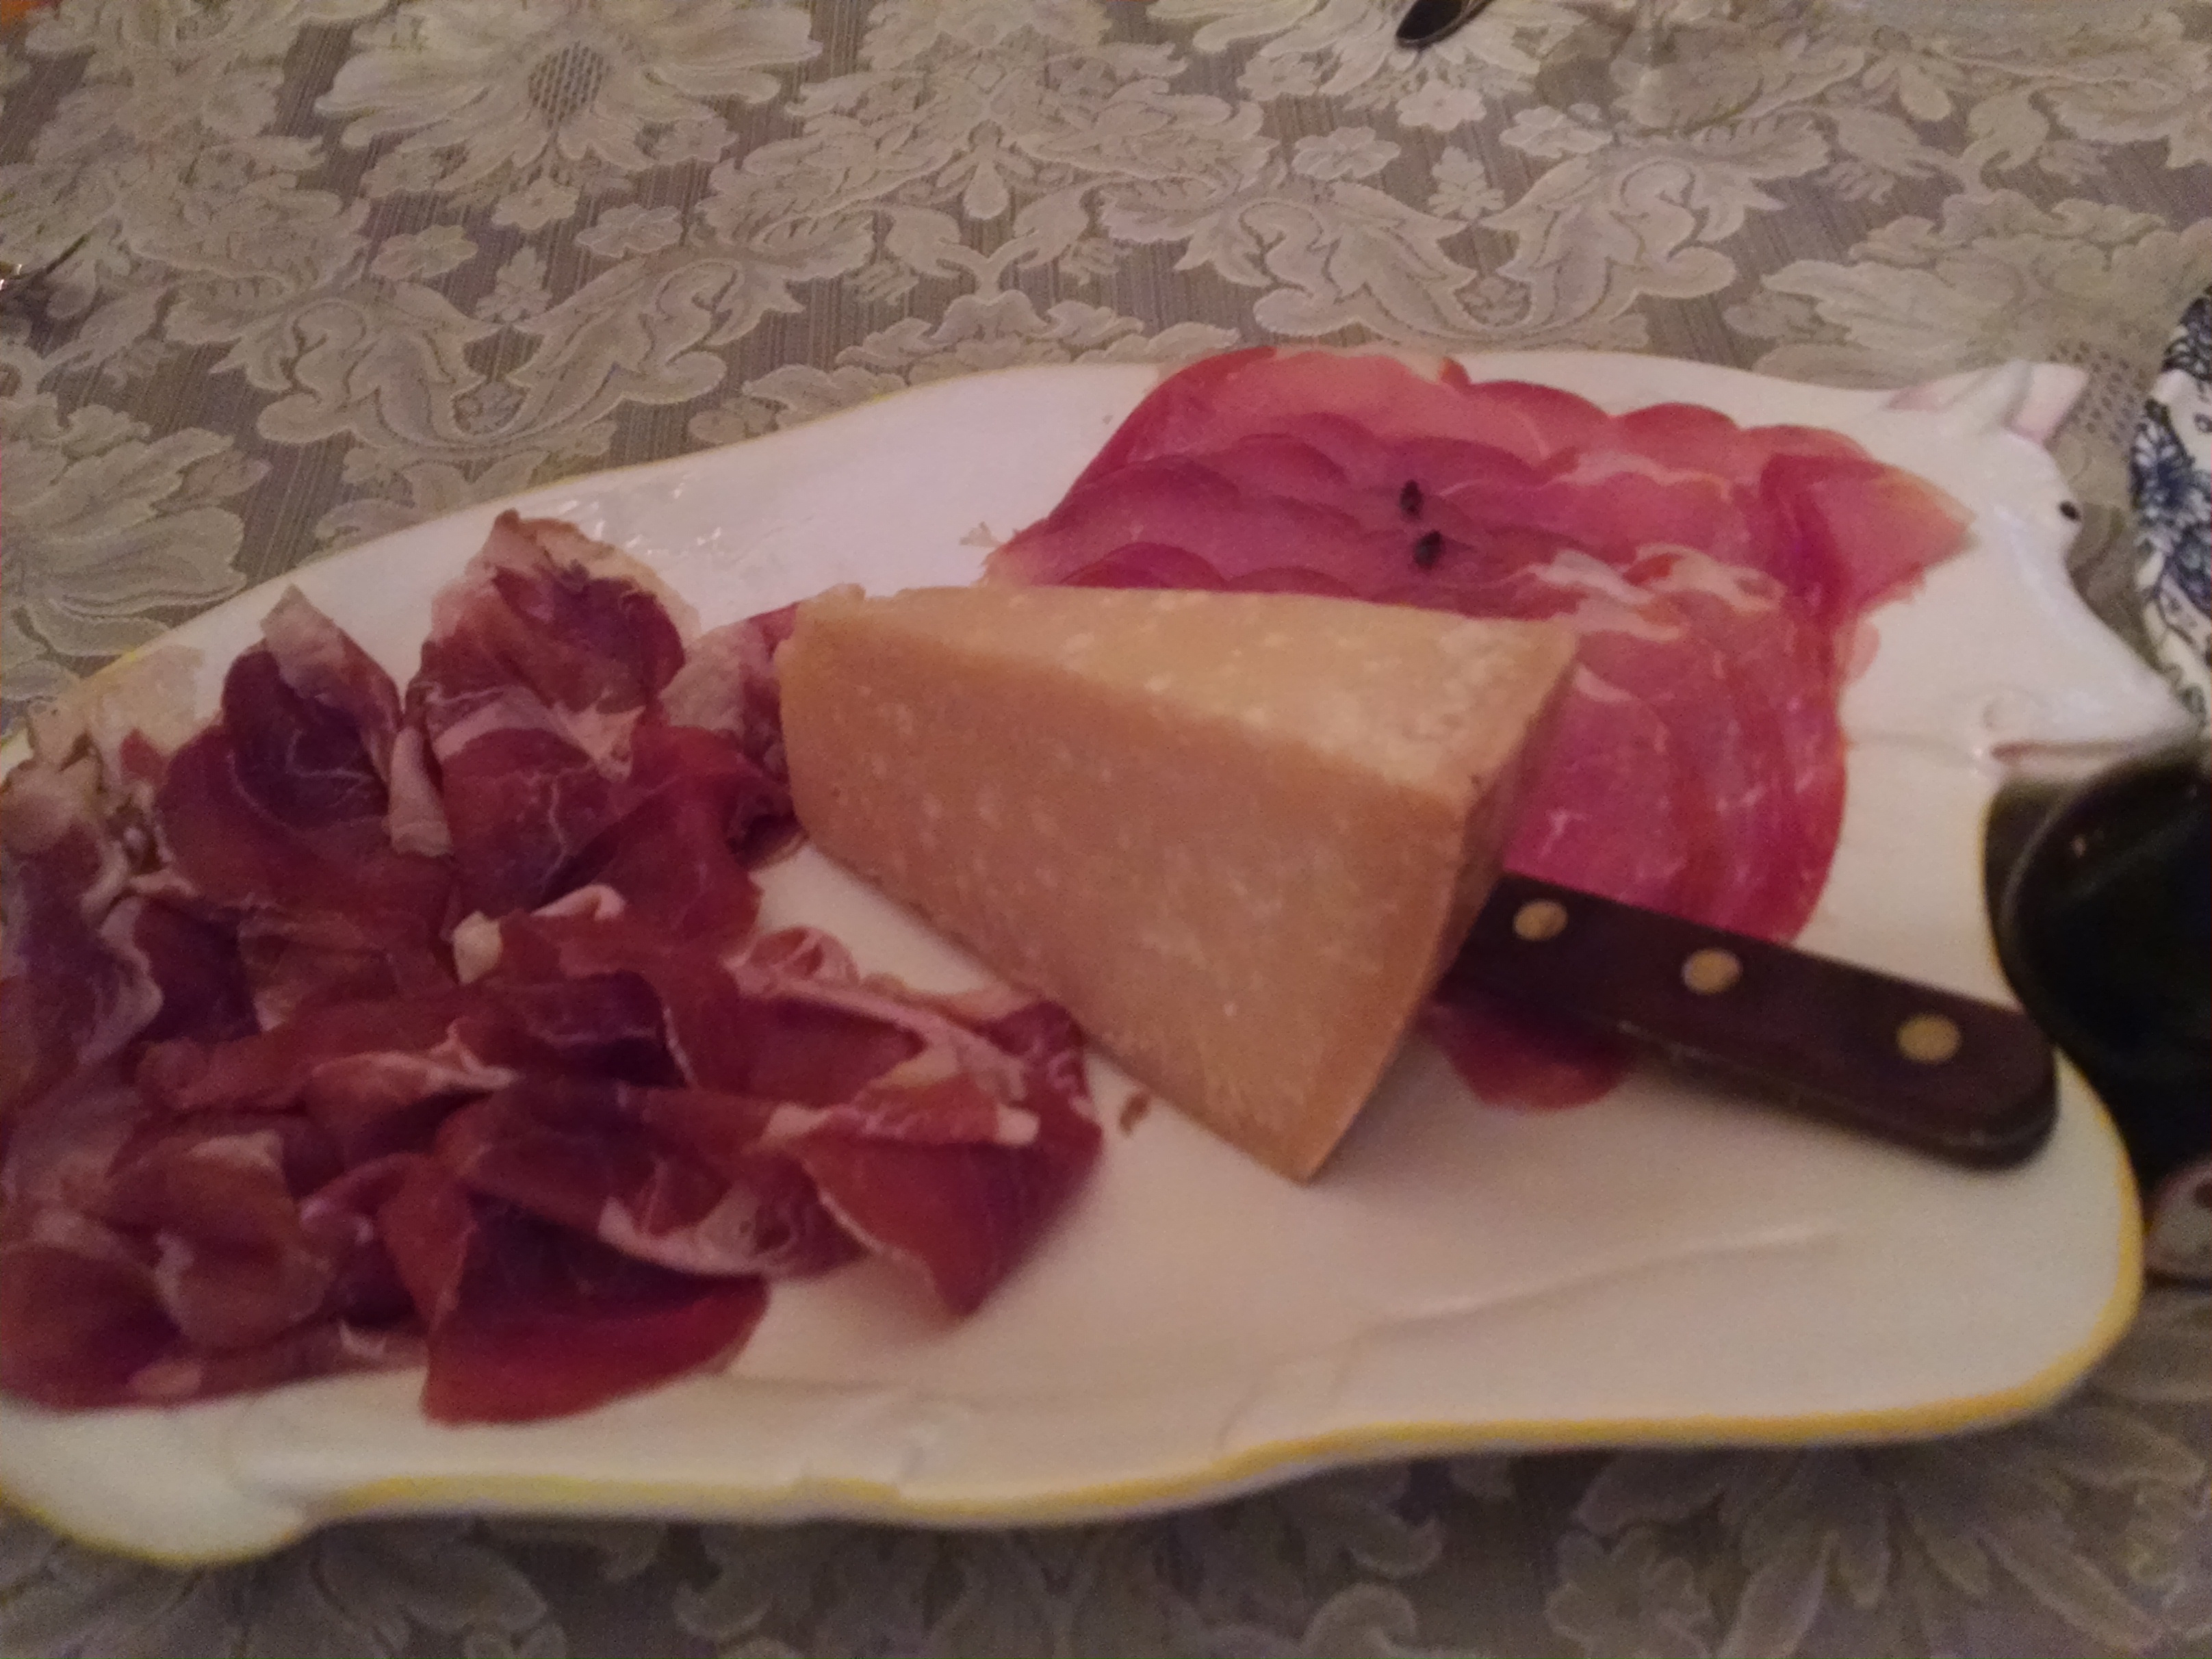 Aged Parmigiano Reggiano cheese between Culatello and domestic Prosciutto